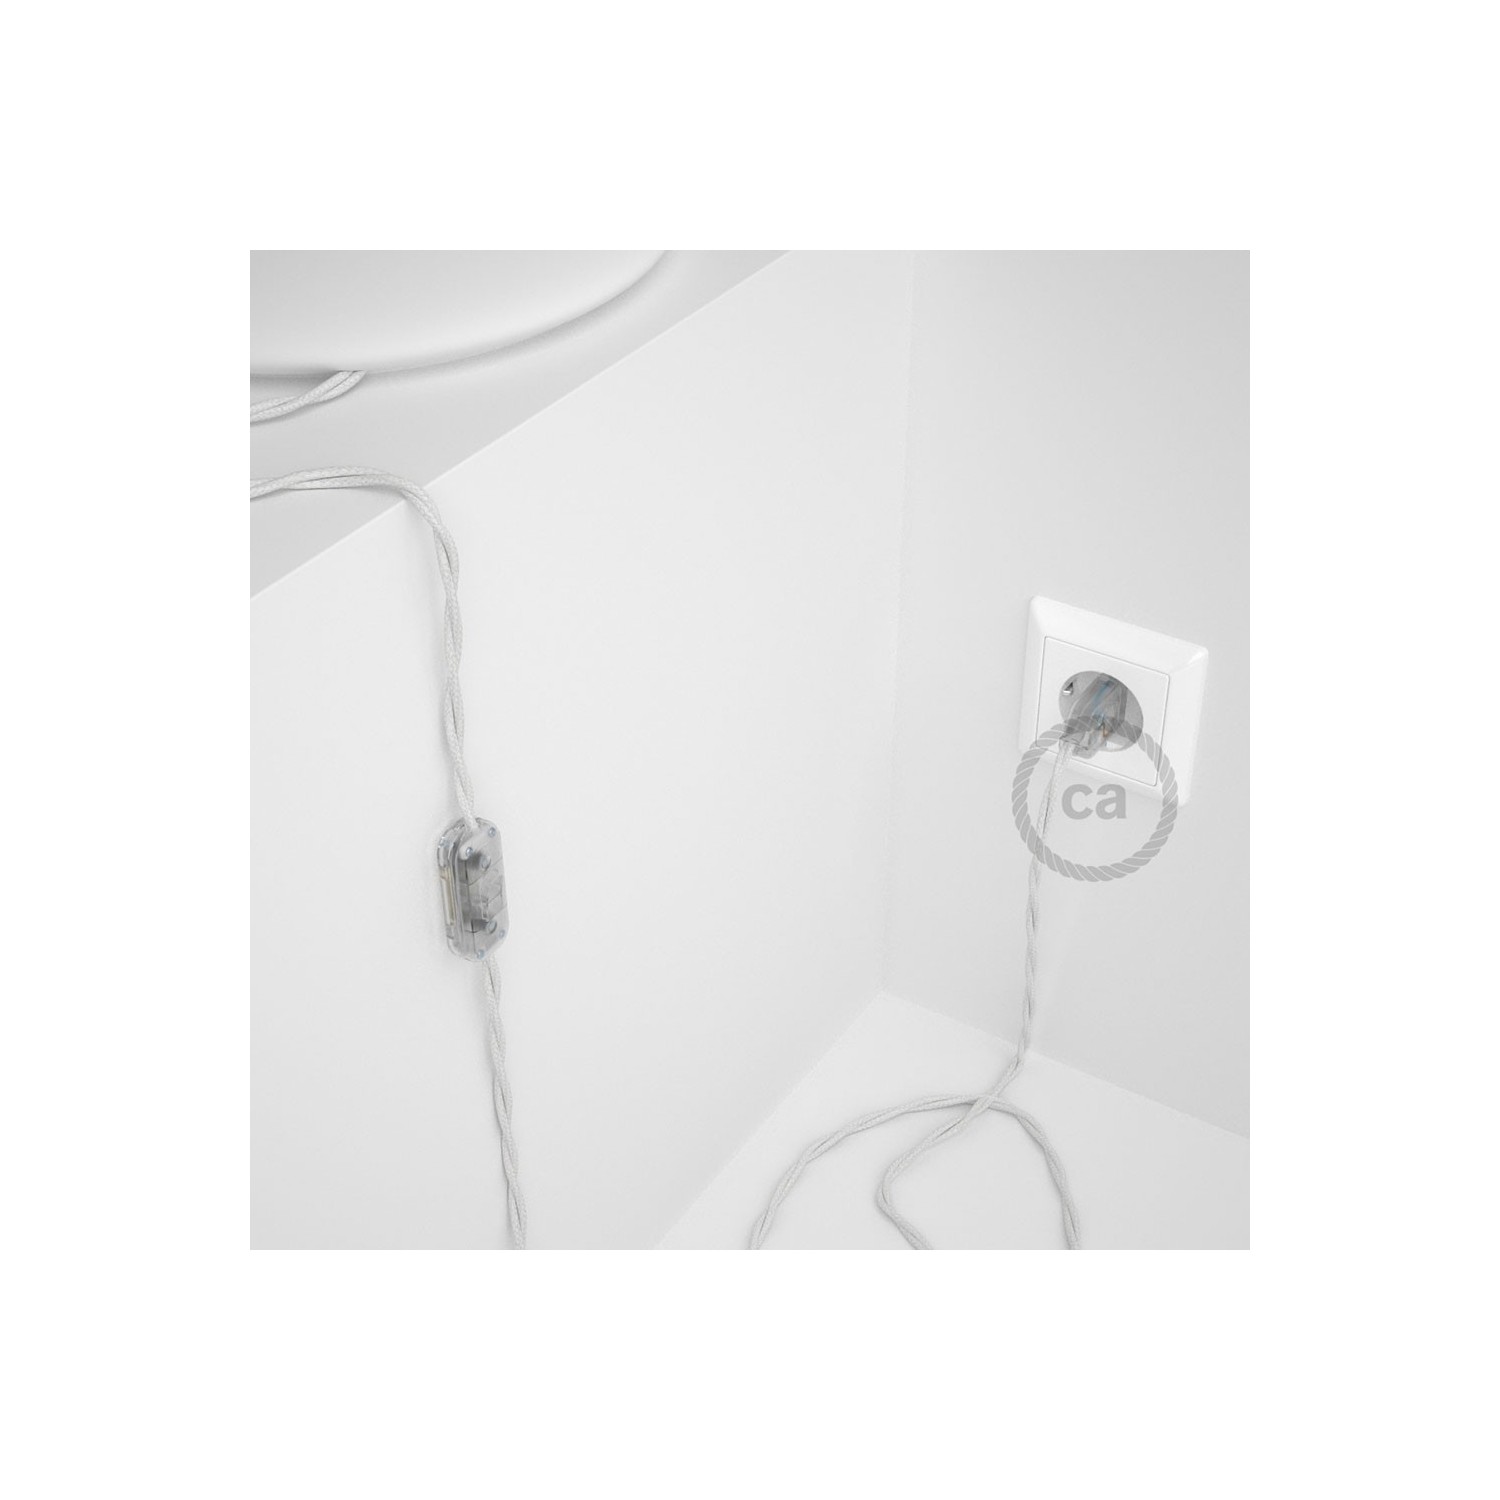 Cablaggio per lampada, cavo TM01 Effetto Seta Bianco 1,80 m. Scegli il colore dell'interruttore e della spina.